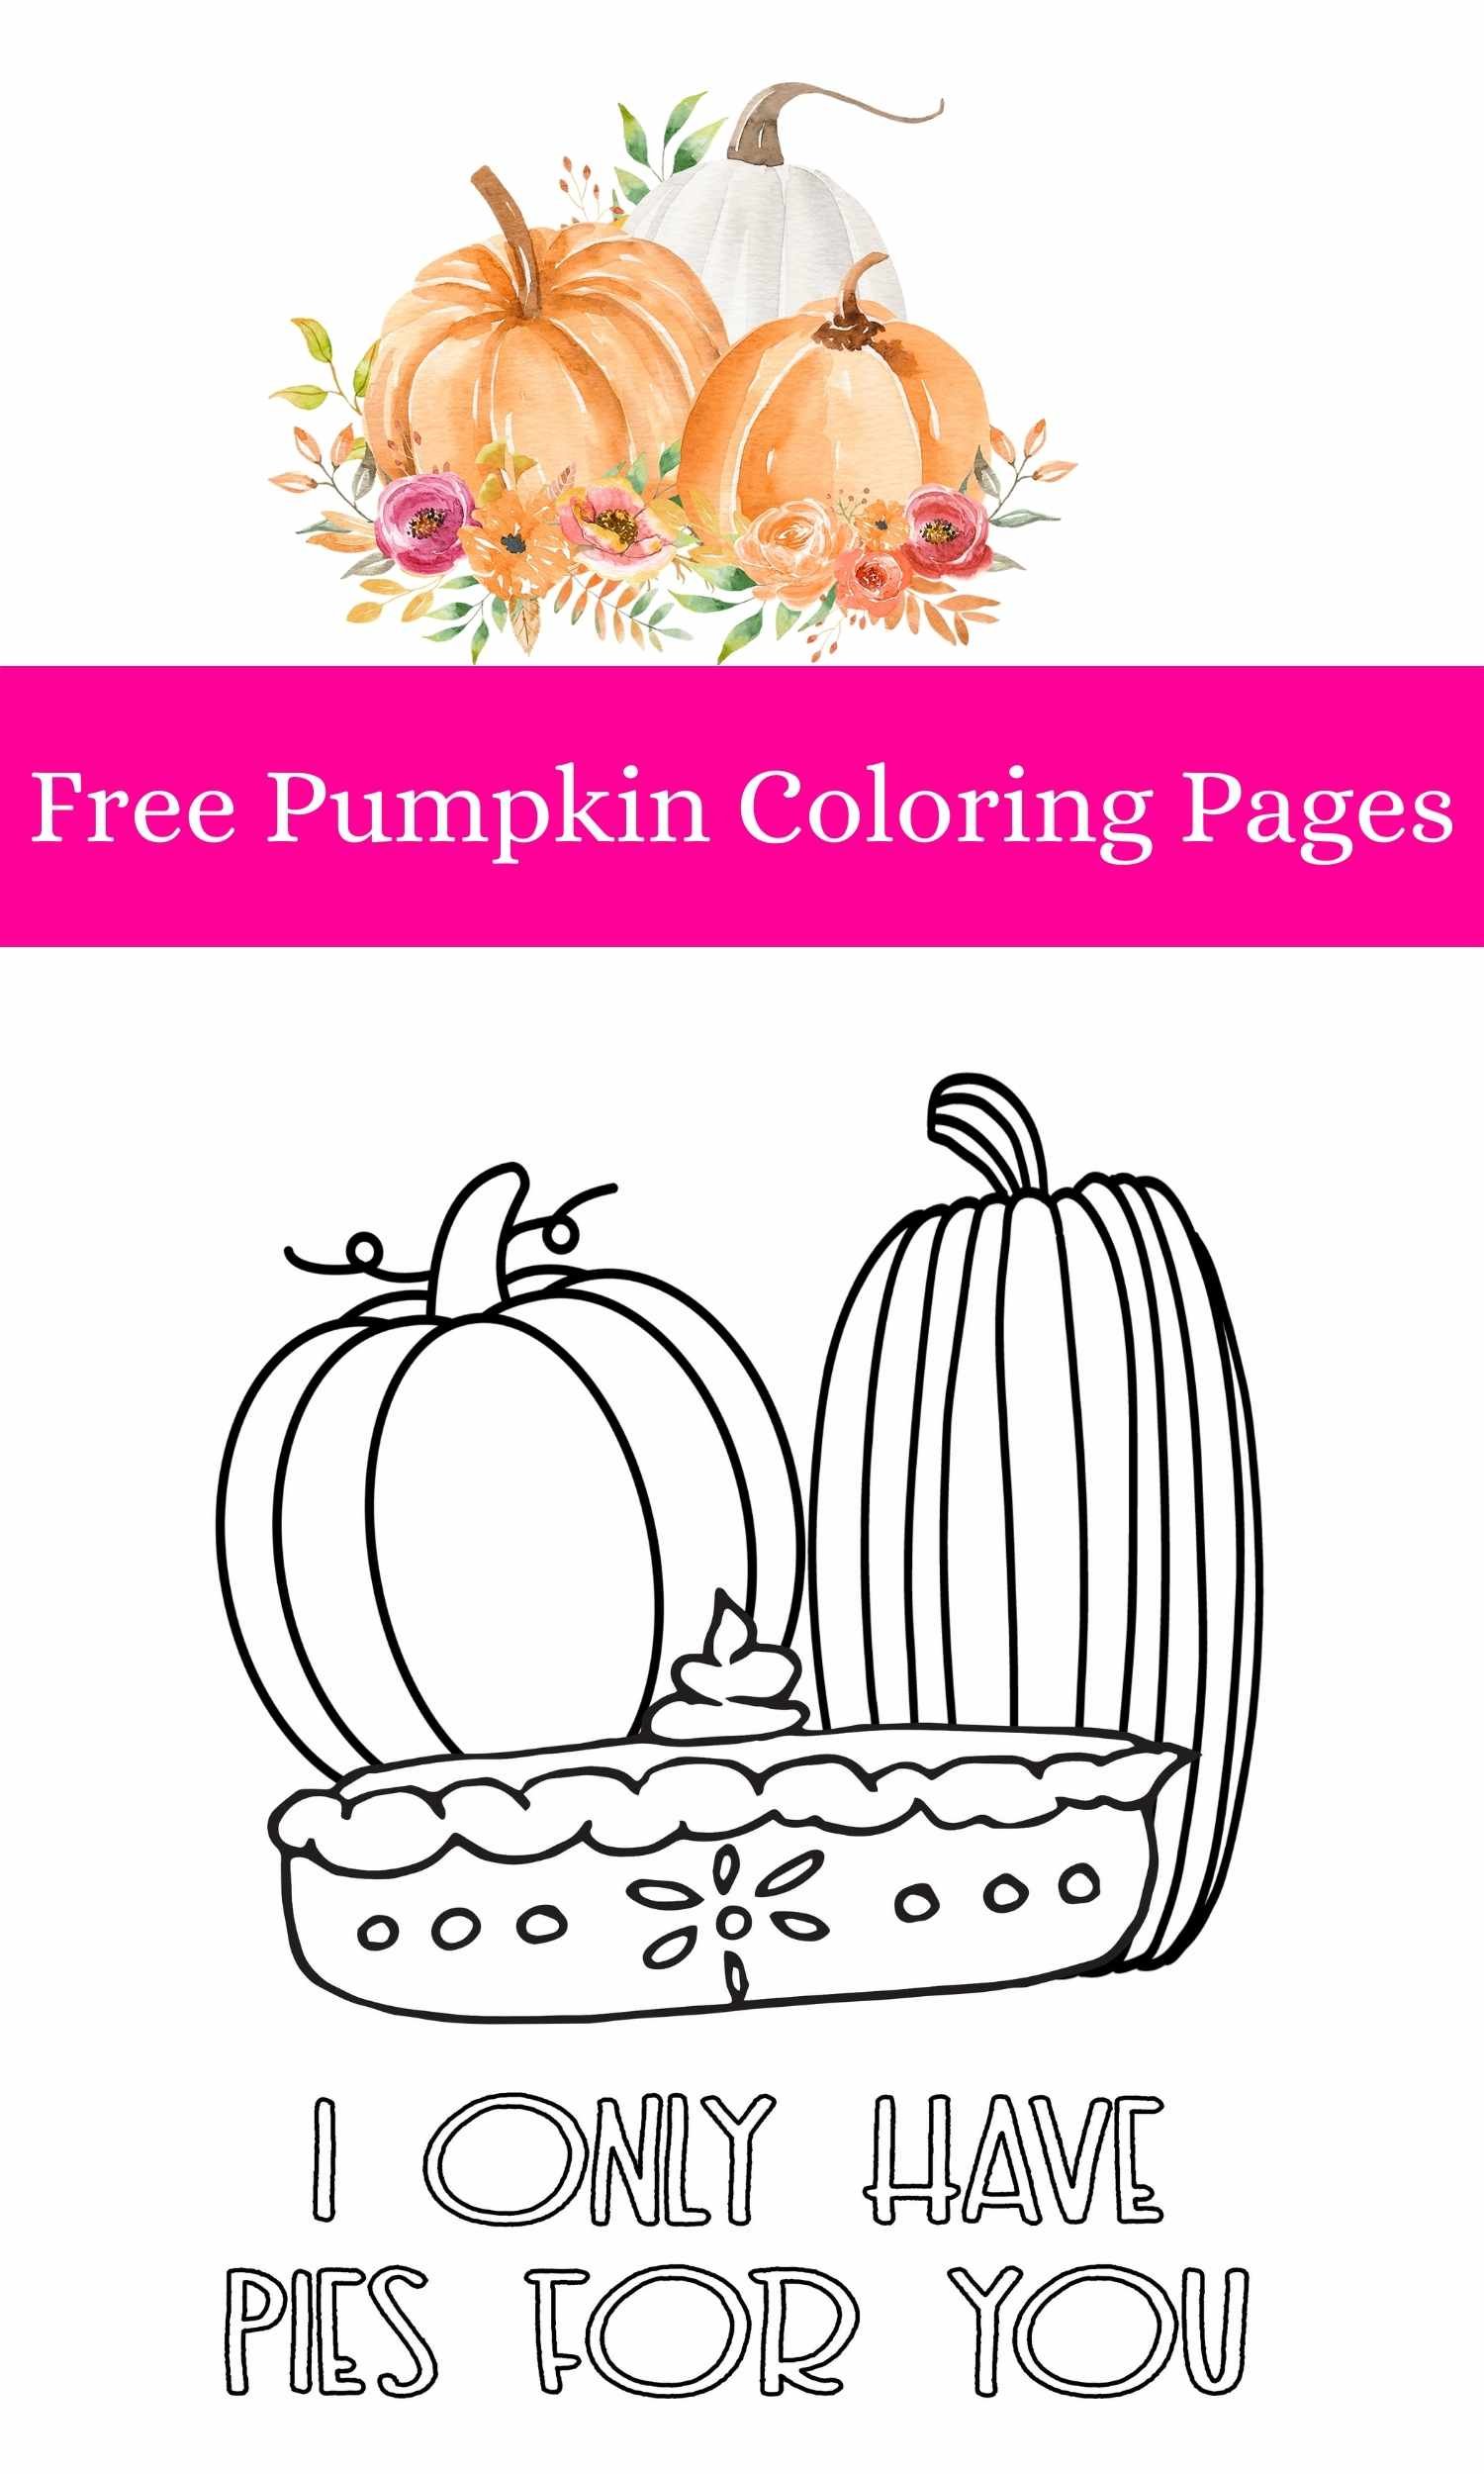 Free pie coloring page â stevie doodles